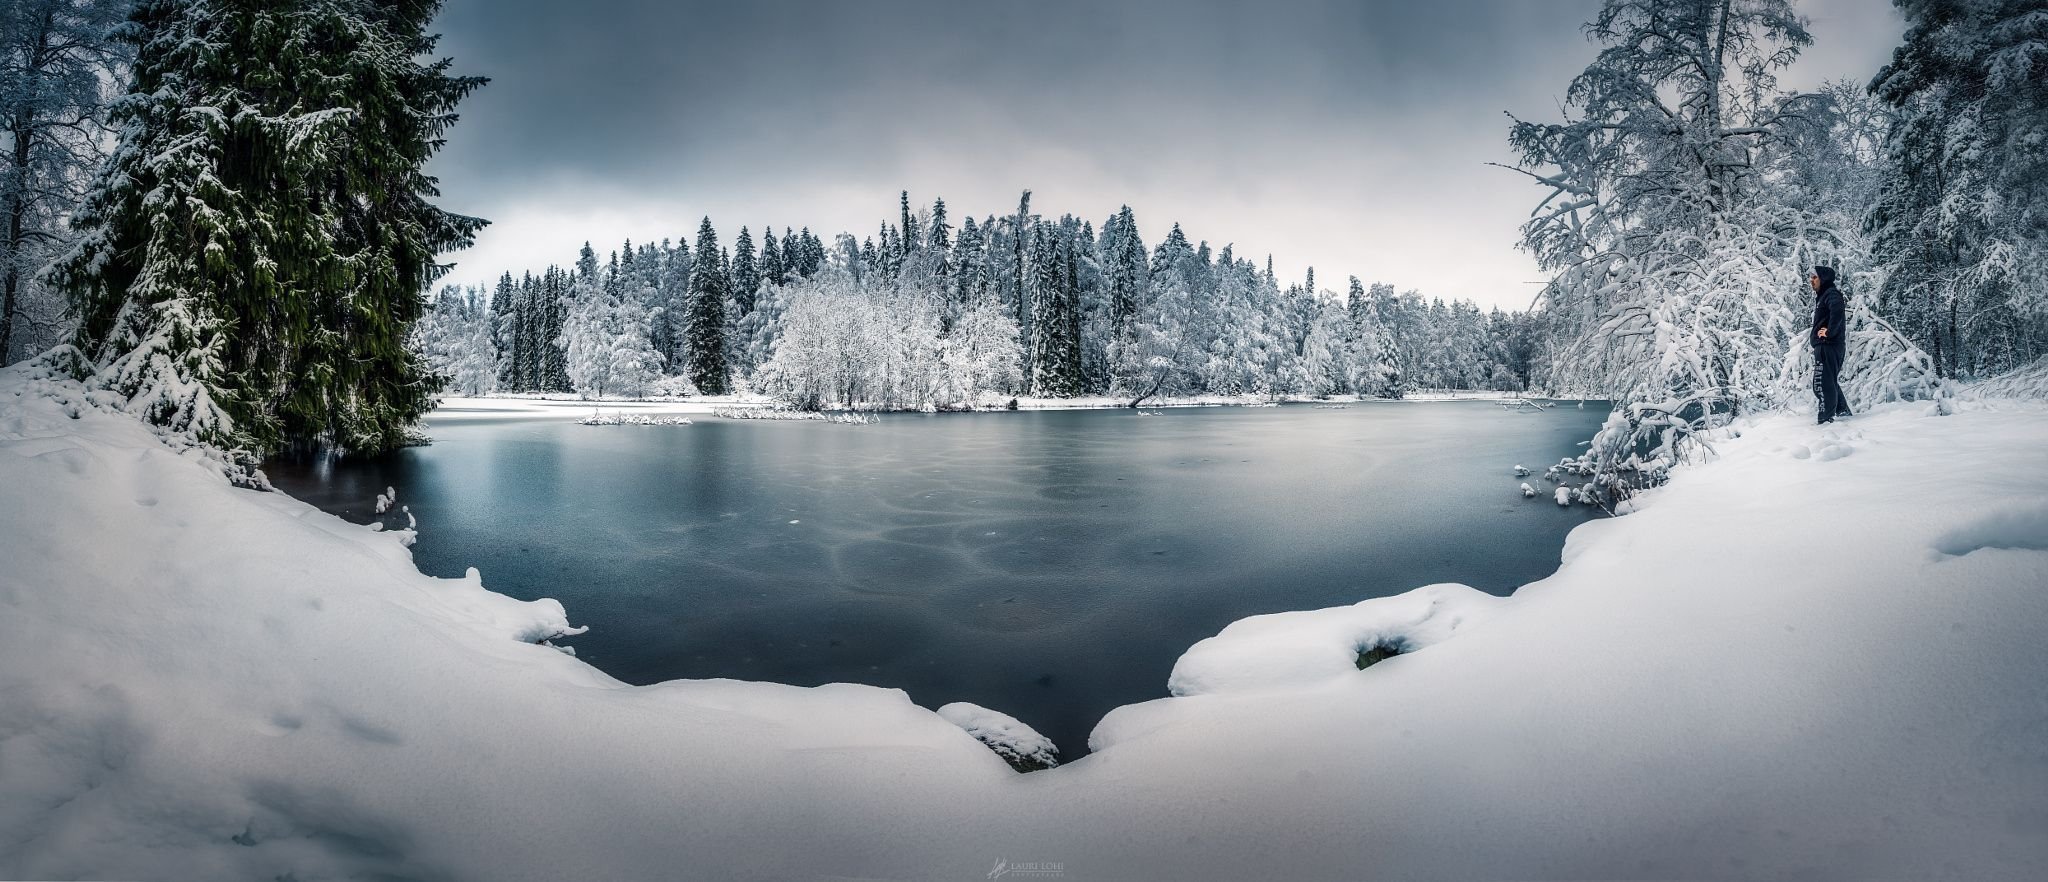 Замерзшее озеро в лесу зимой